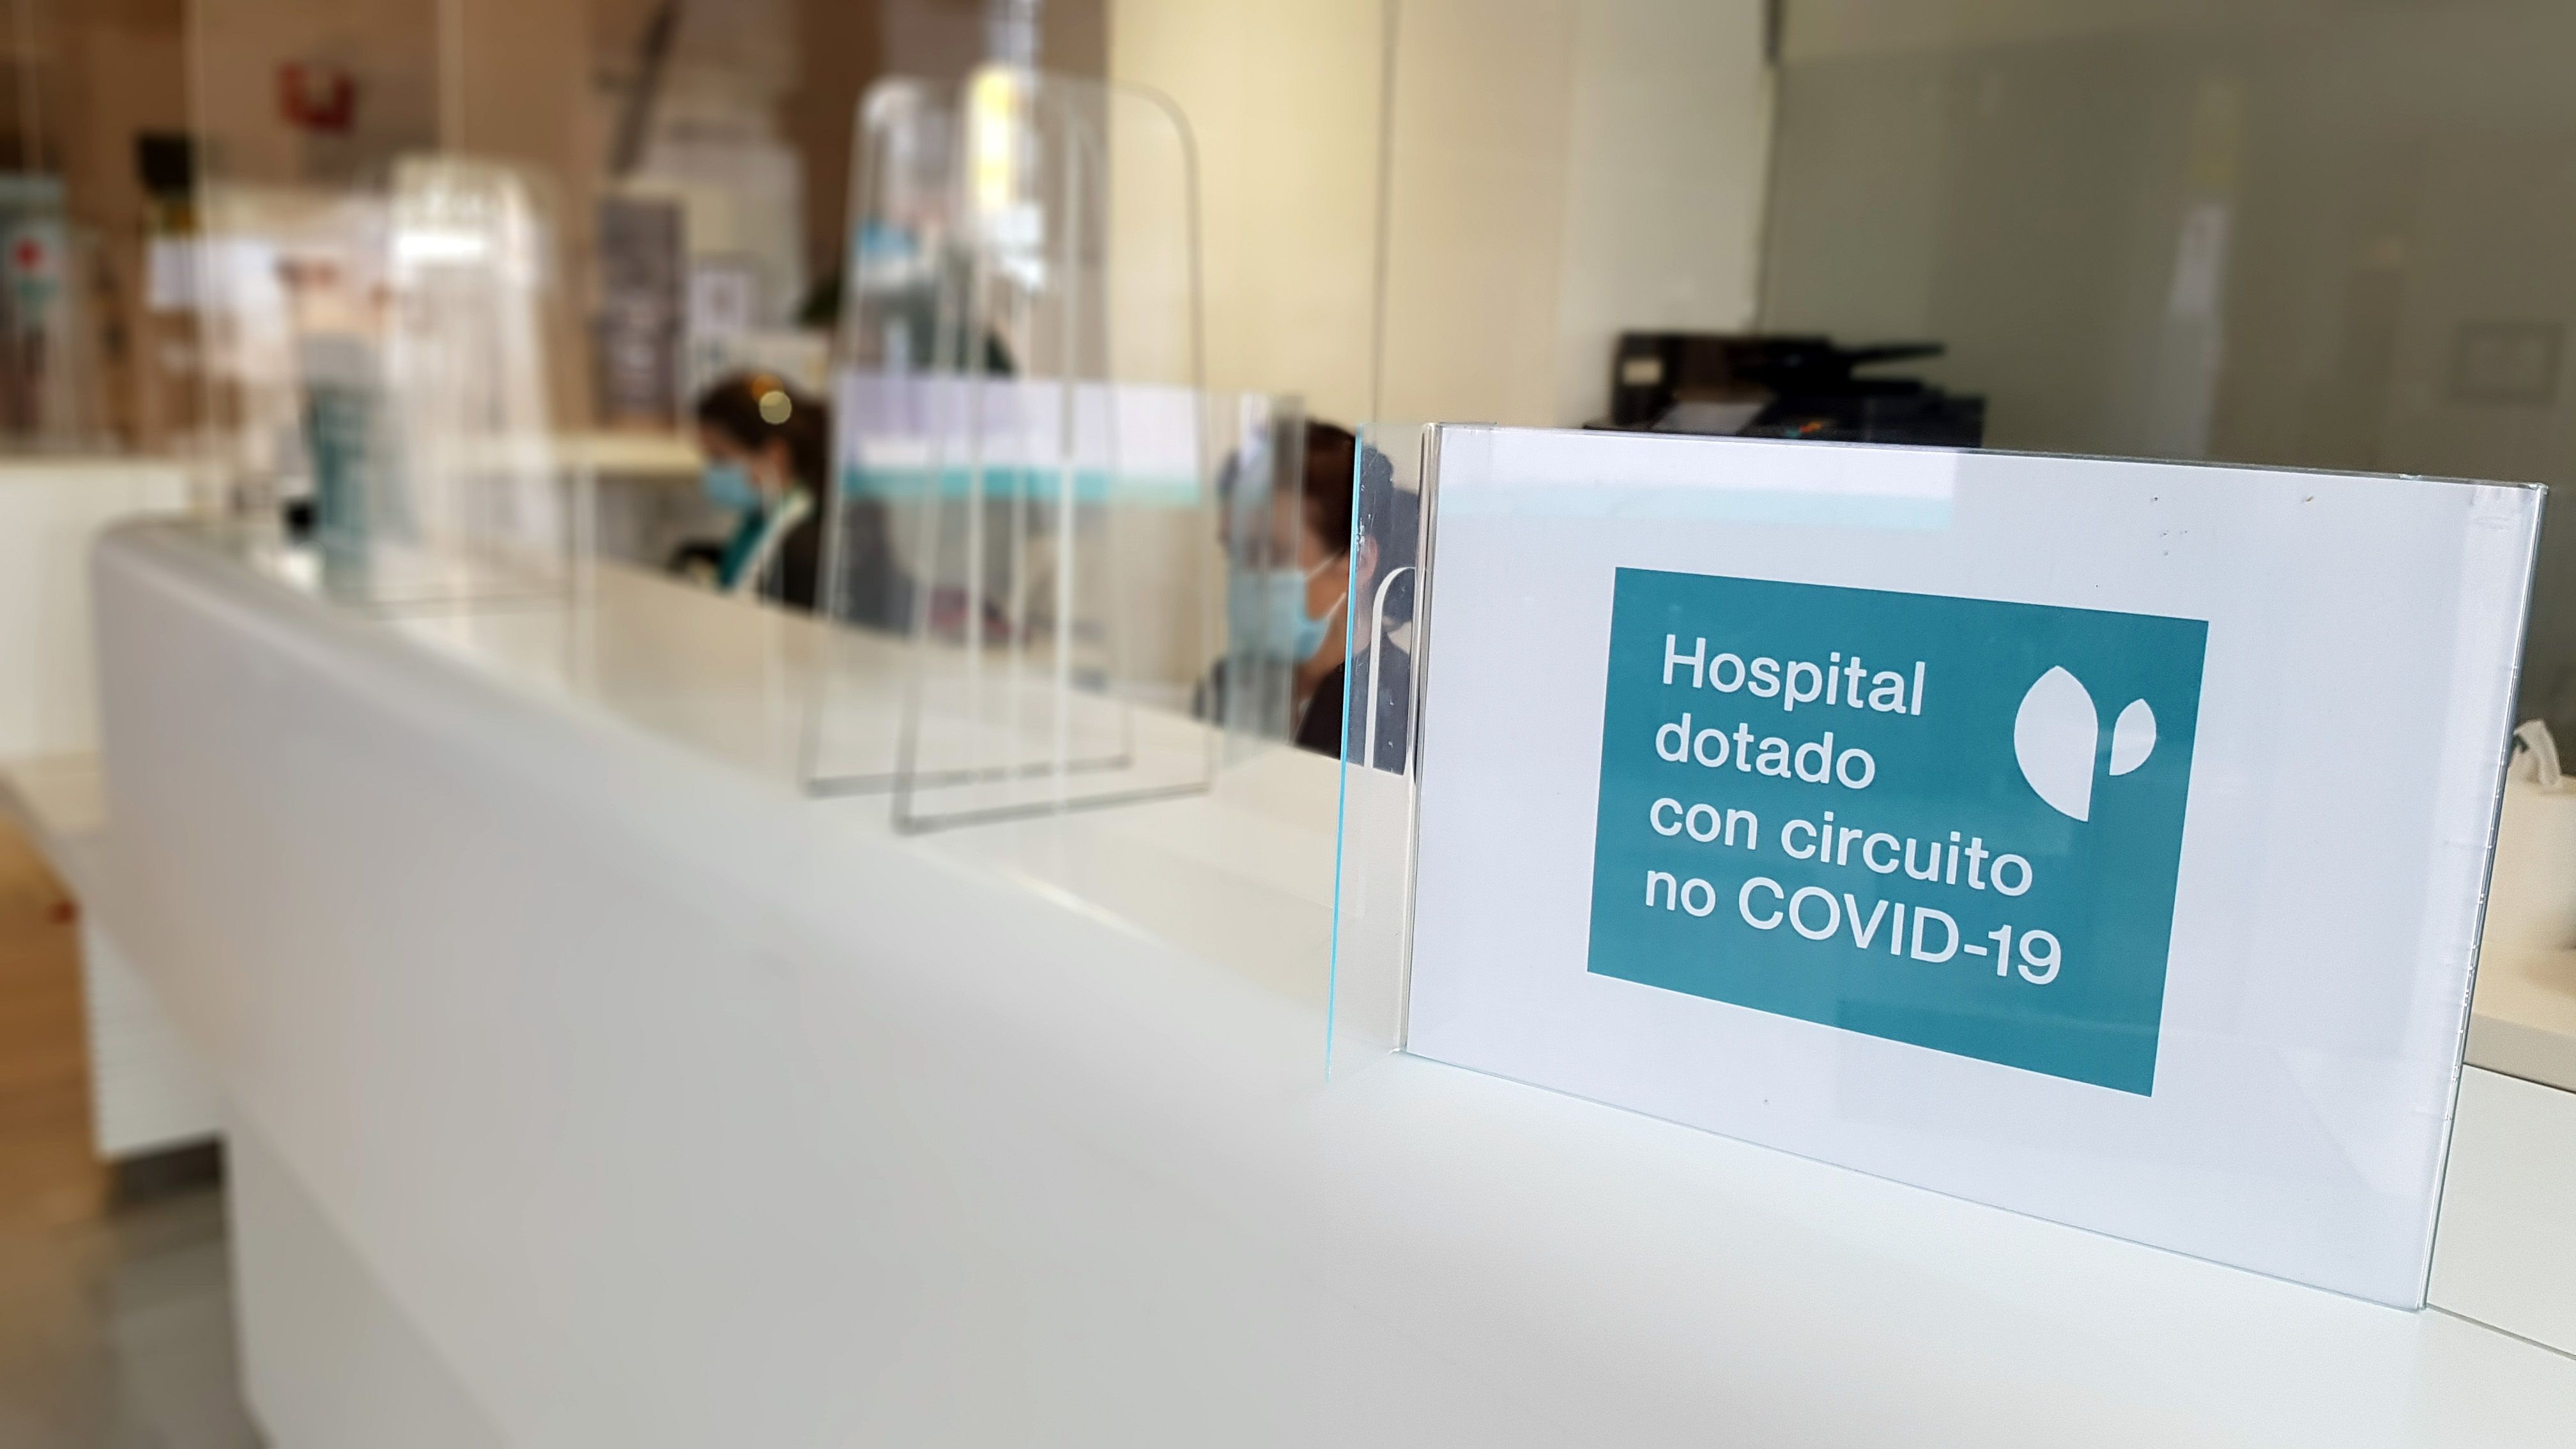 Quirónsalud, única compañía sanitaria entre las 20 más comprometidas ante el Covid-19, según Merco